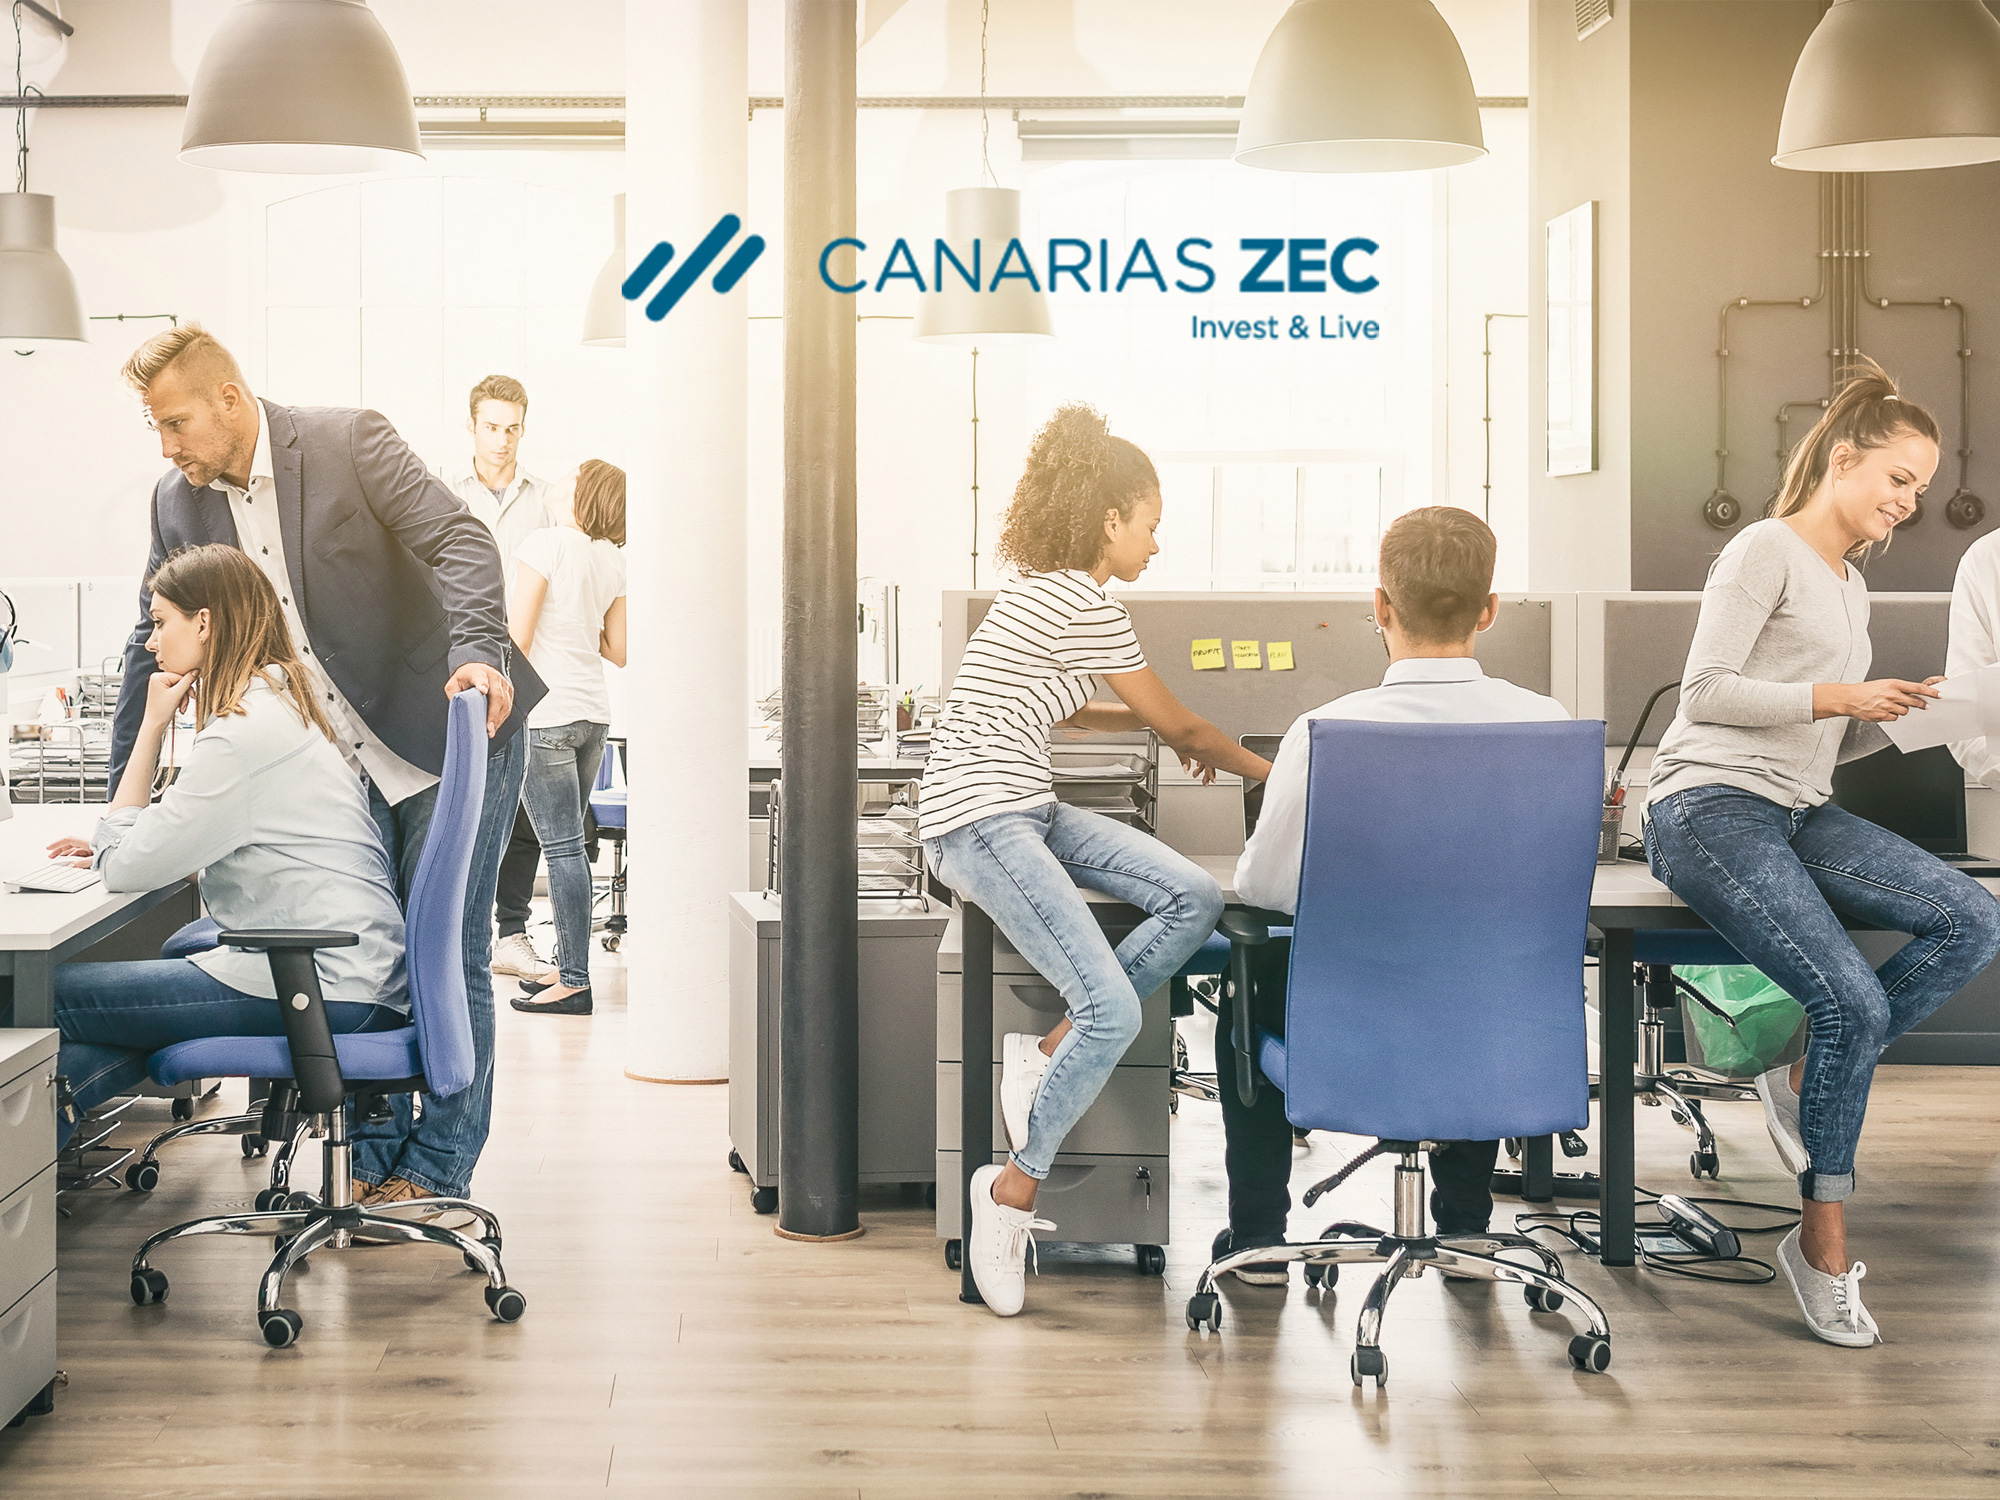 Si eres empresa ZEC, consulta las ventajas fiscales de contratar un sistema de registro horario con otra empresa ZEC